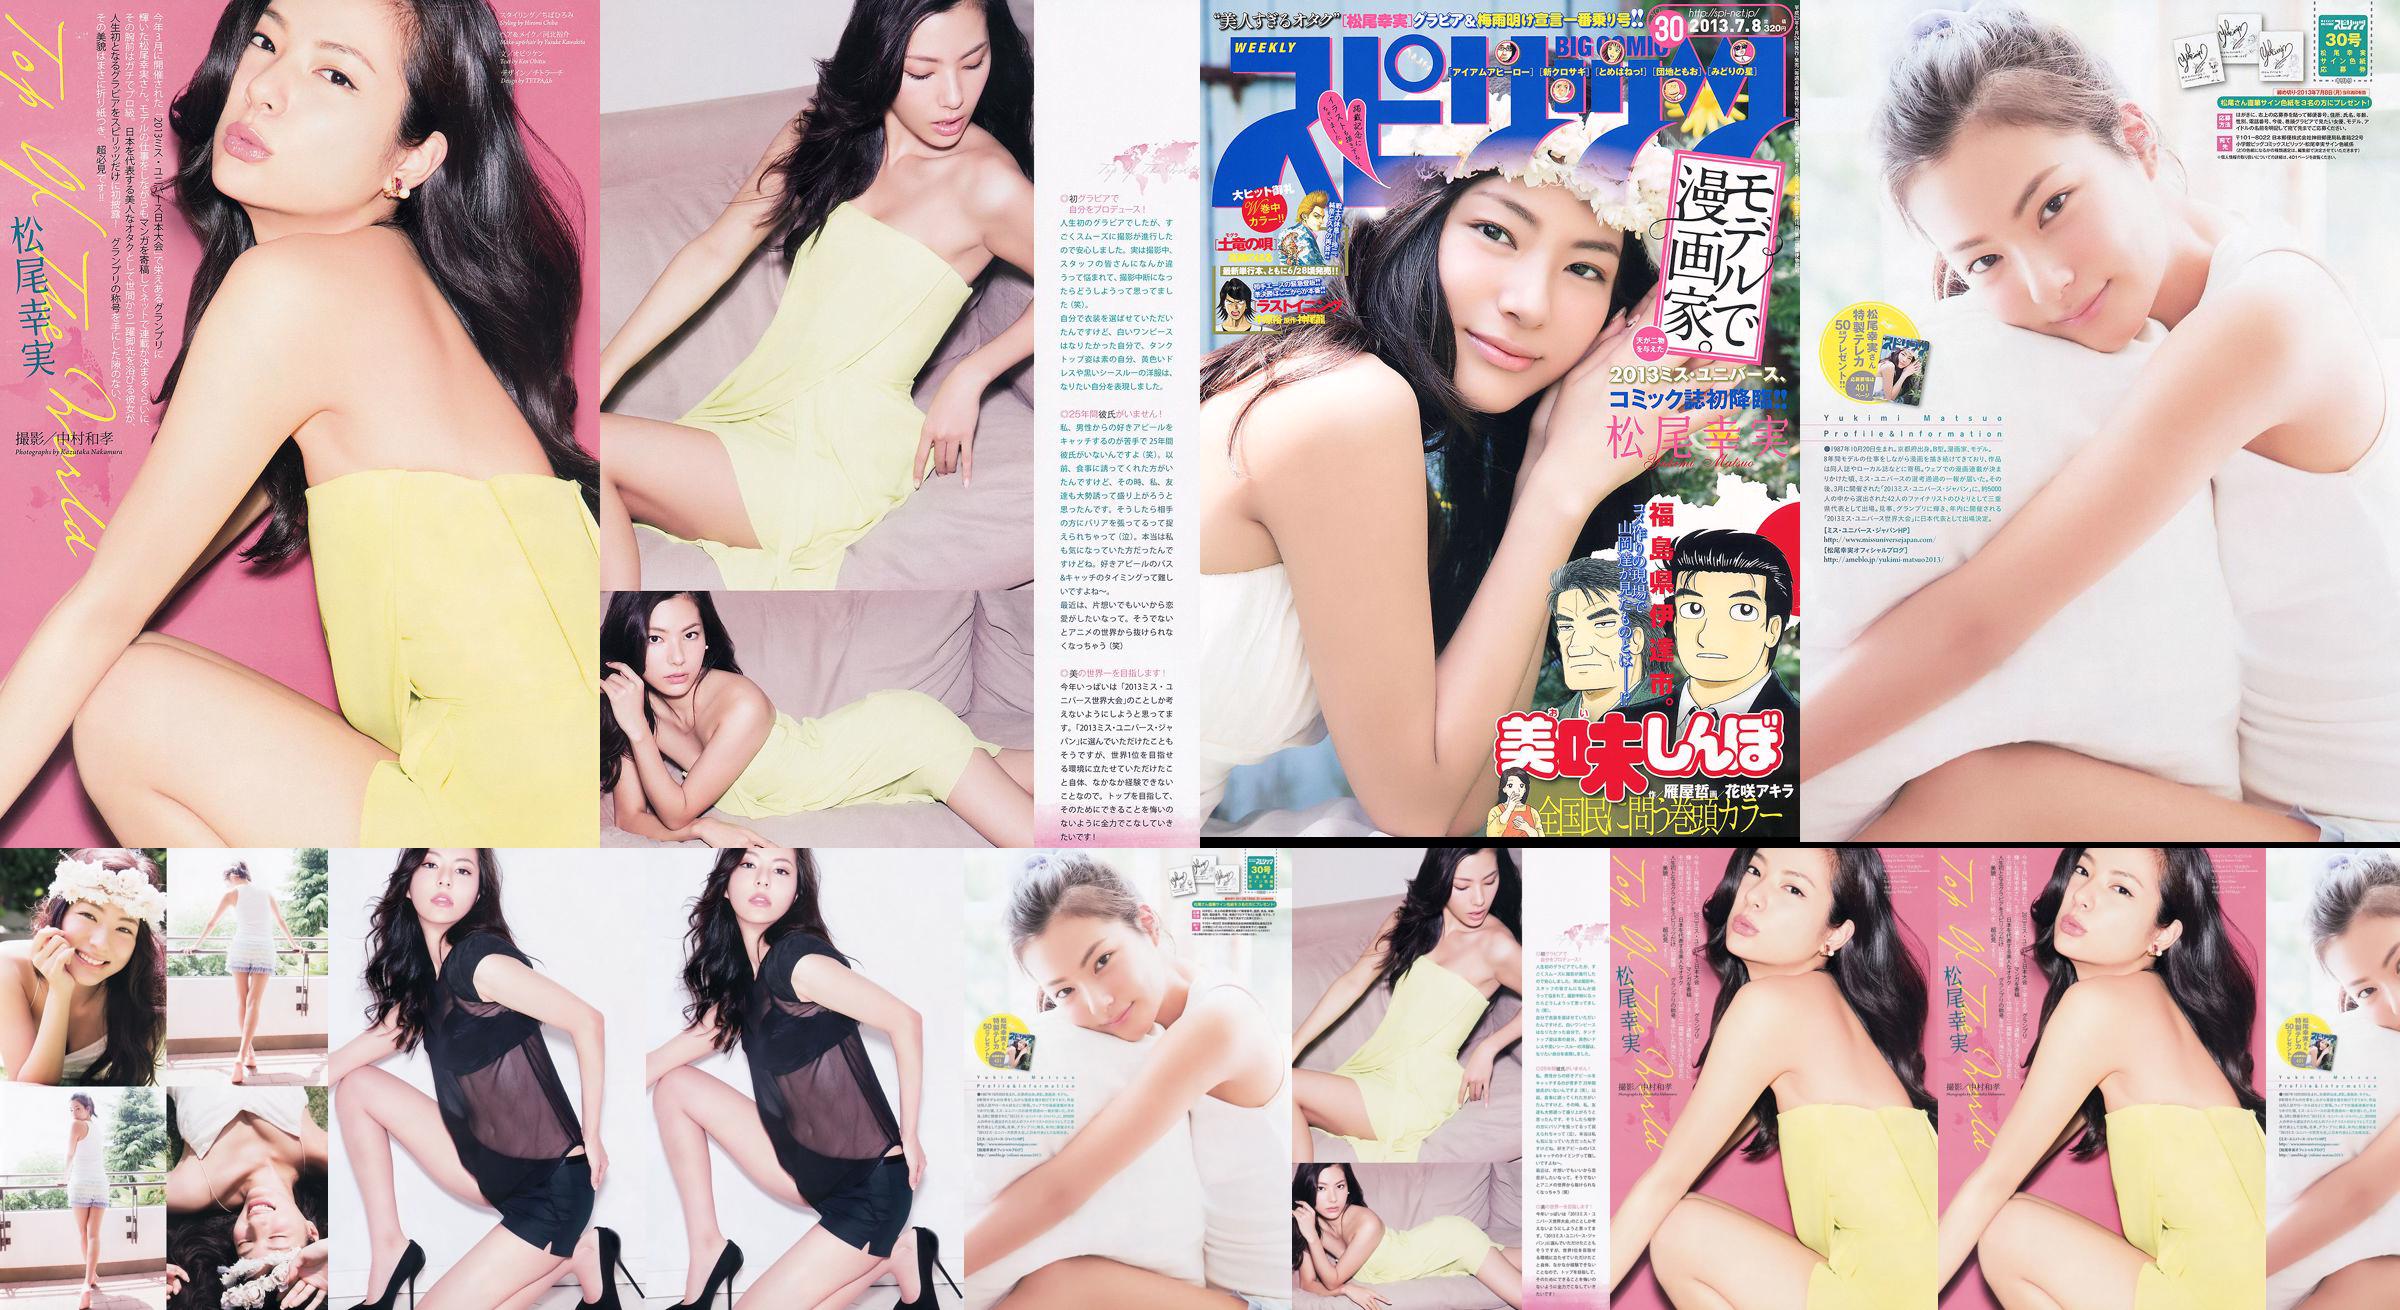 [Grands esprits de la bande dessinée hebdomadaire] Komi Matsuo 2013 No.30 Photo Magazine No.2bbc3a Page 1